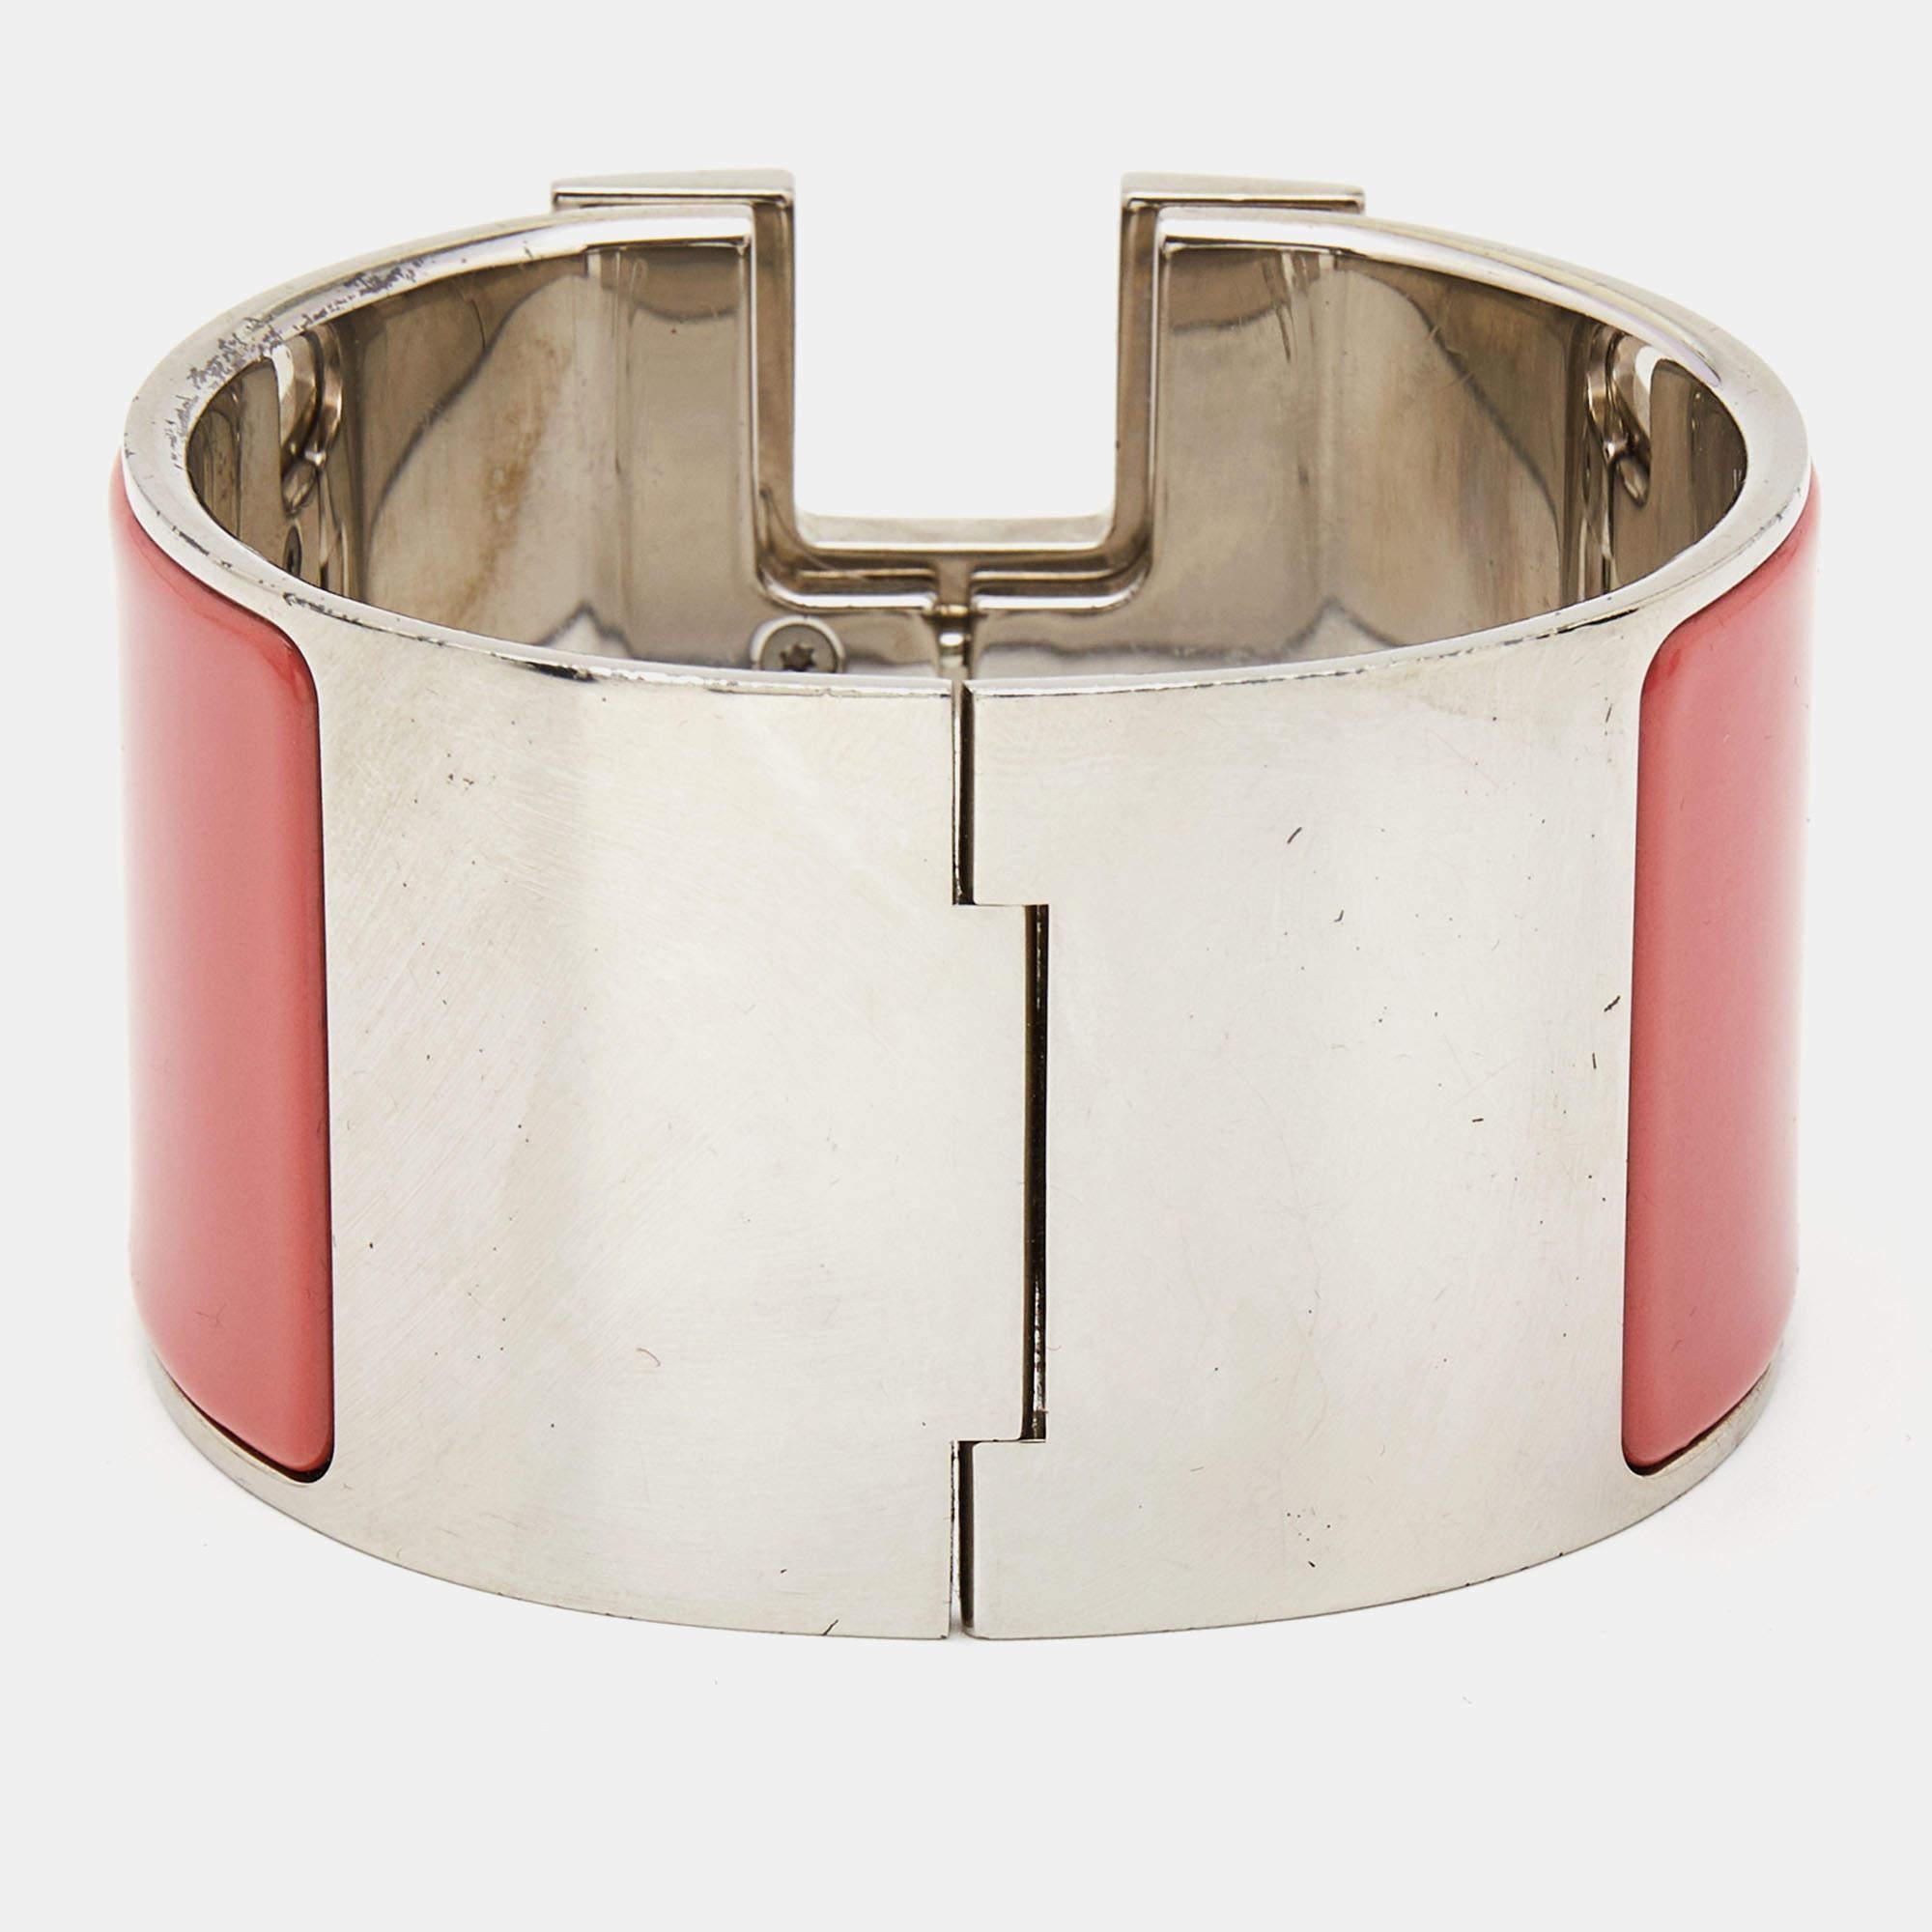 Élevez votre poignet avec ce bracelet pour femme de la marque Hermès. Méticuleusement fabriqué, il respire l'élégance et le luxe grâce à des matériaux de qualité supérieure, des détails exquis et un design intemporel, ce qui en fait la pièce